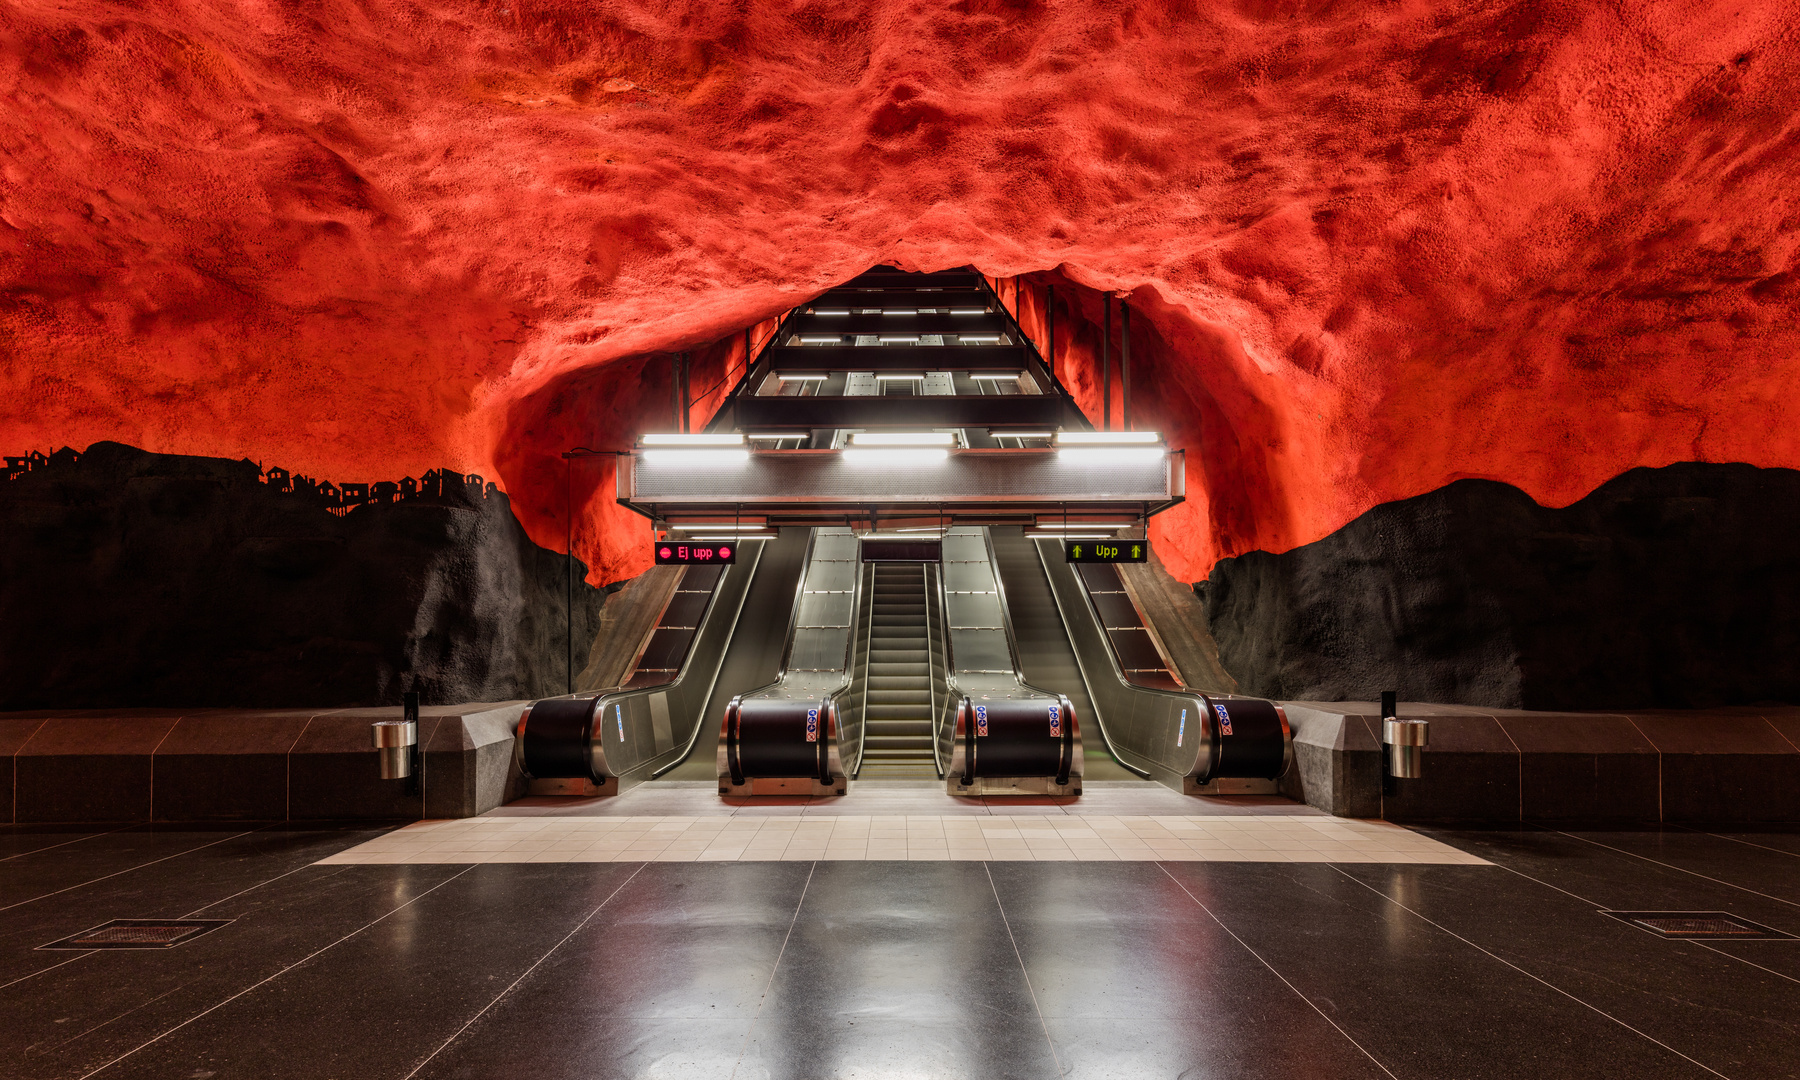 Stockholm Tunnelbanna